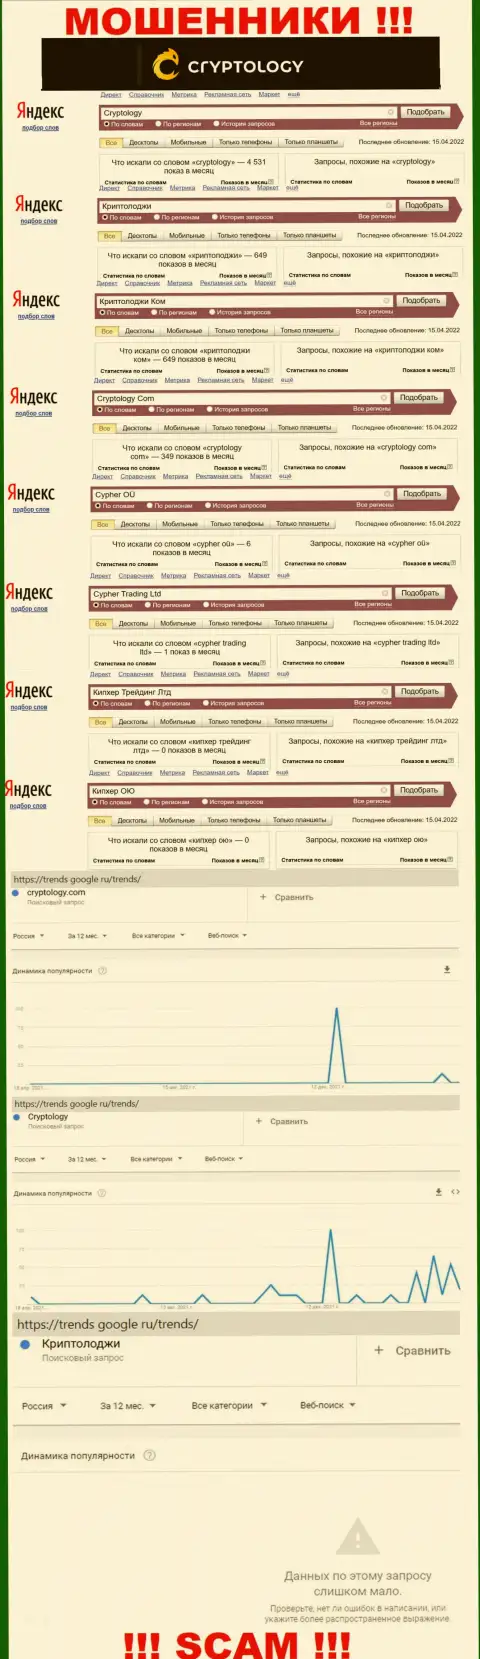 Количество online-запросов в поисковиках сети по бренду мошенников Криптолоджи